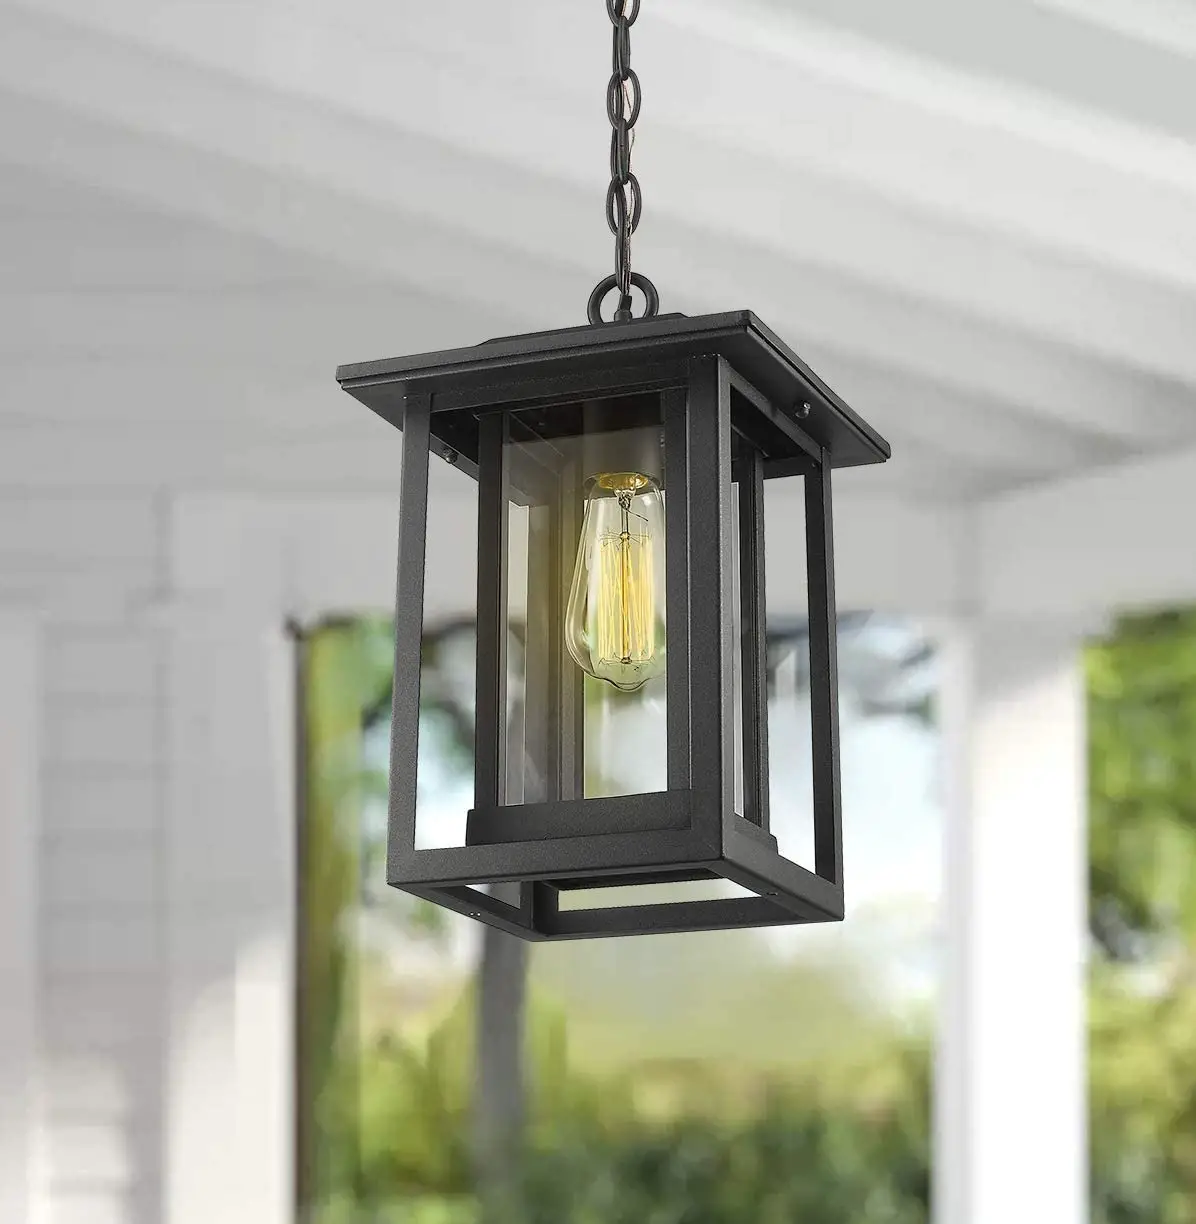 The 8 Best Outdoor Hanging Lantern Lights - RatedLocks